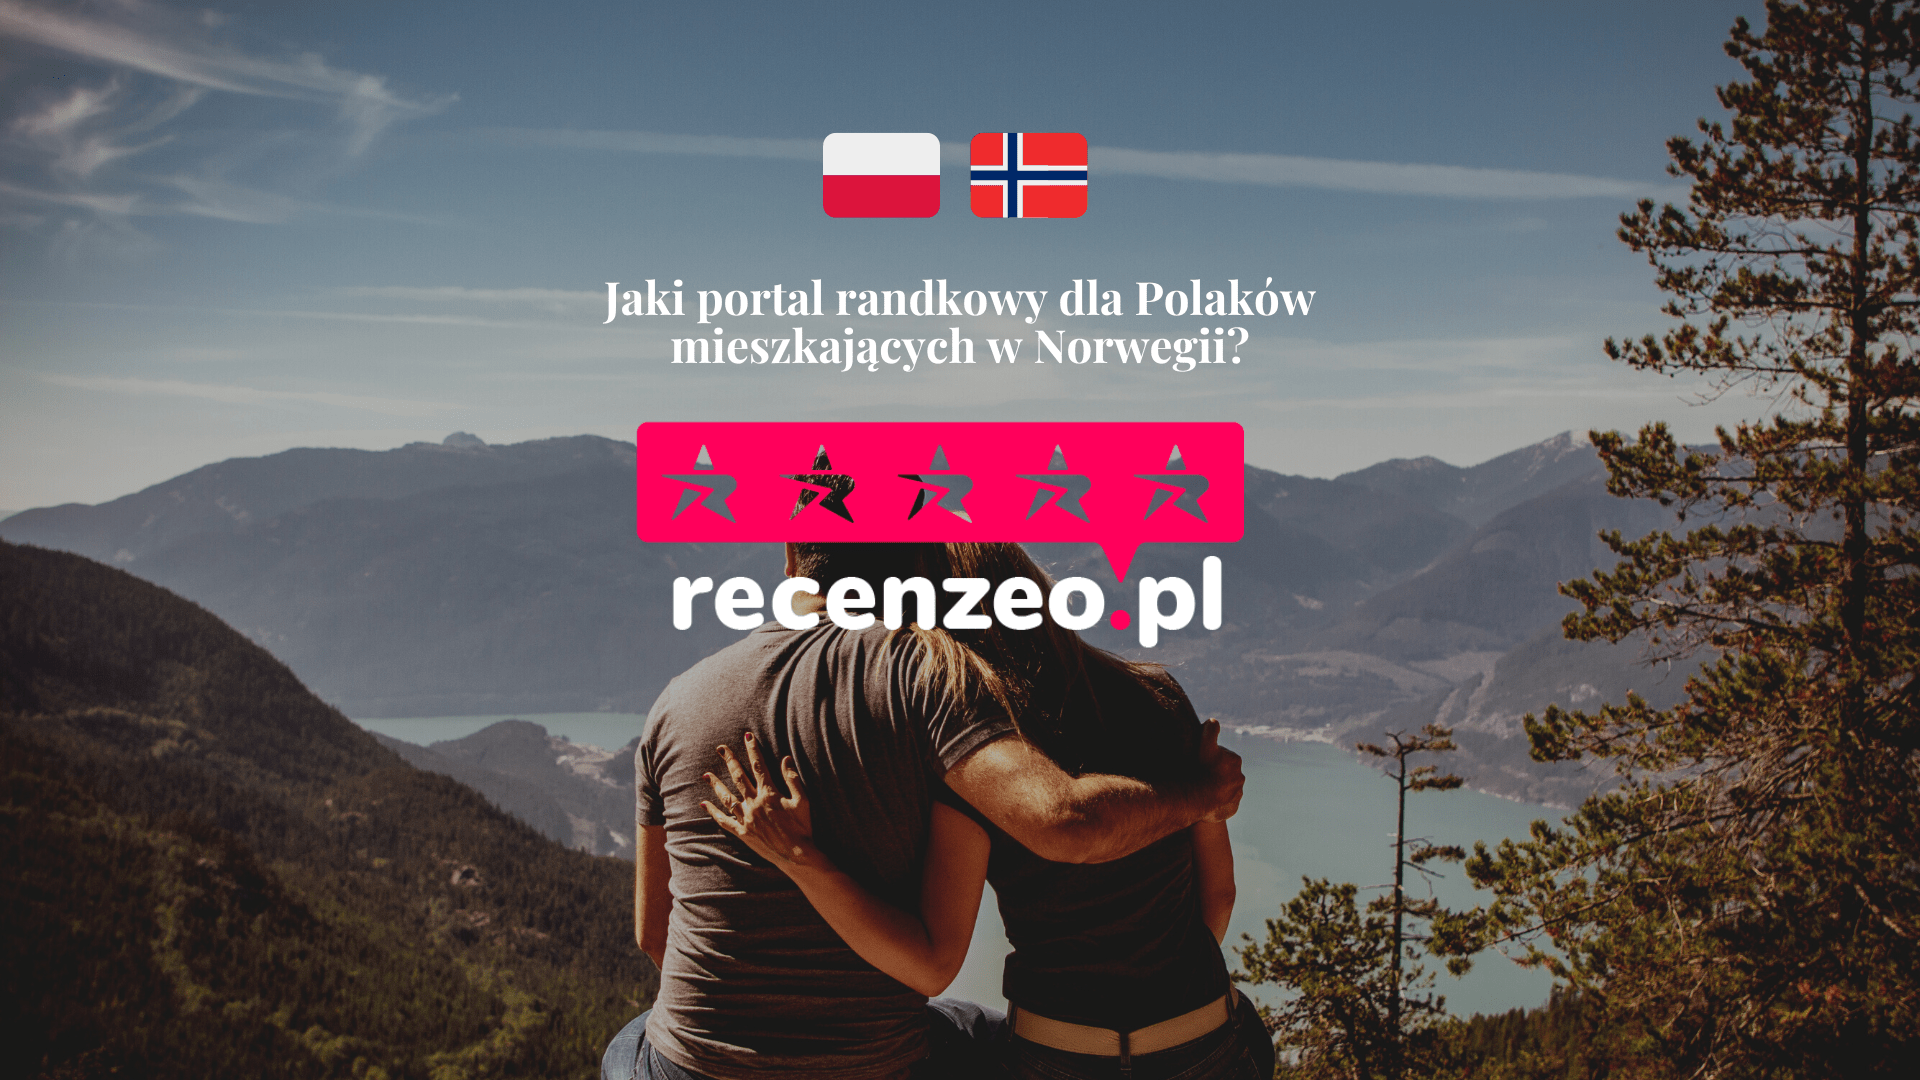 Jaki portal randkowy dla Polaków w Norwegii?